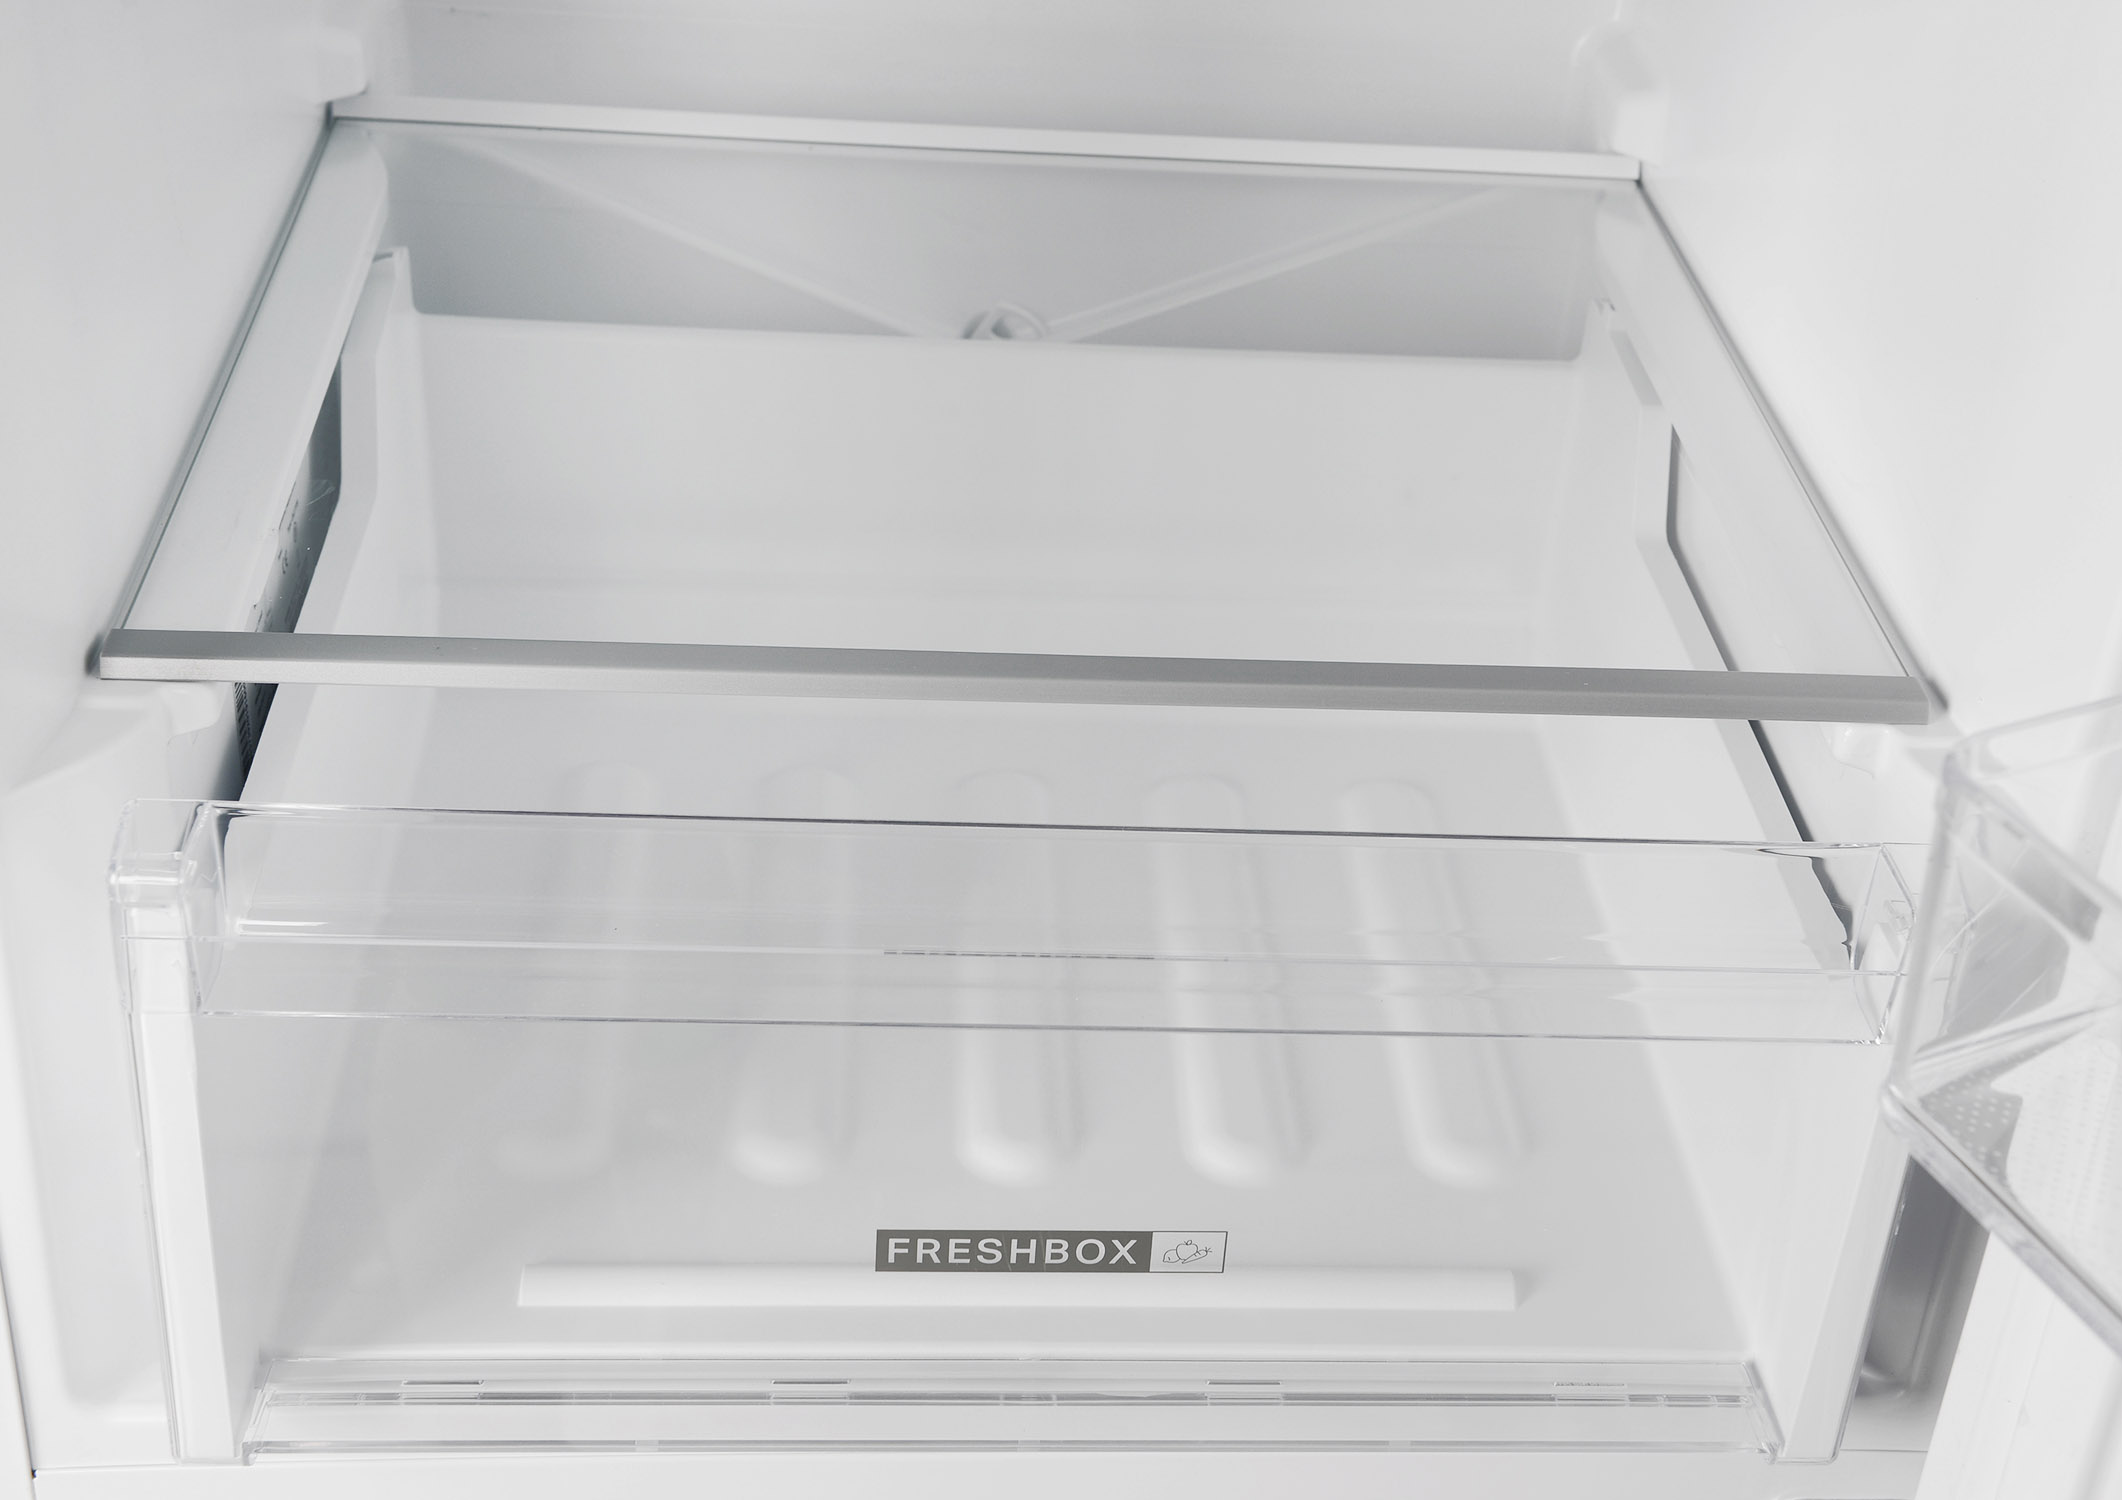 Двухкамерный холодильник WHIRLPOOL W5 711E W